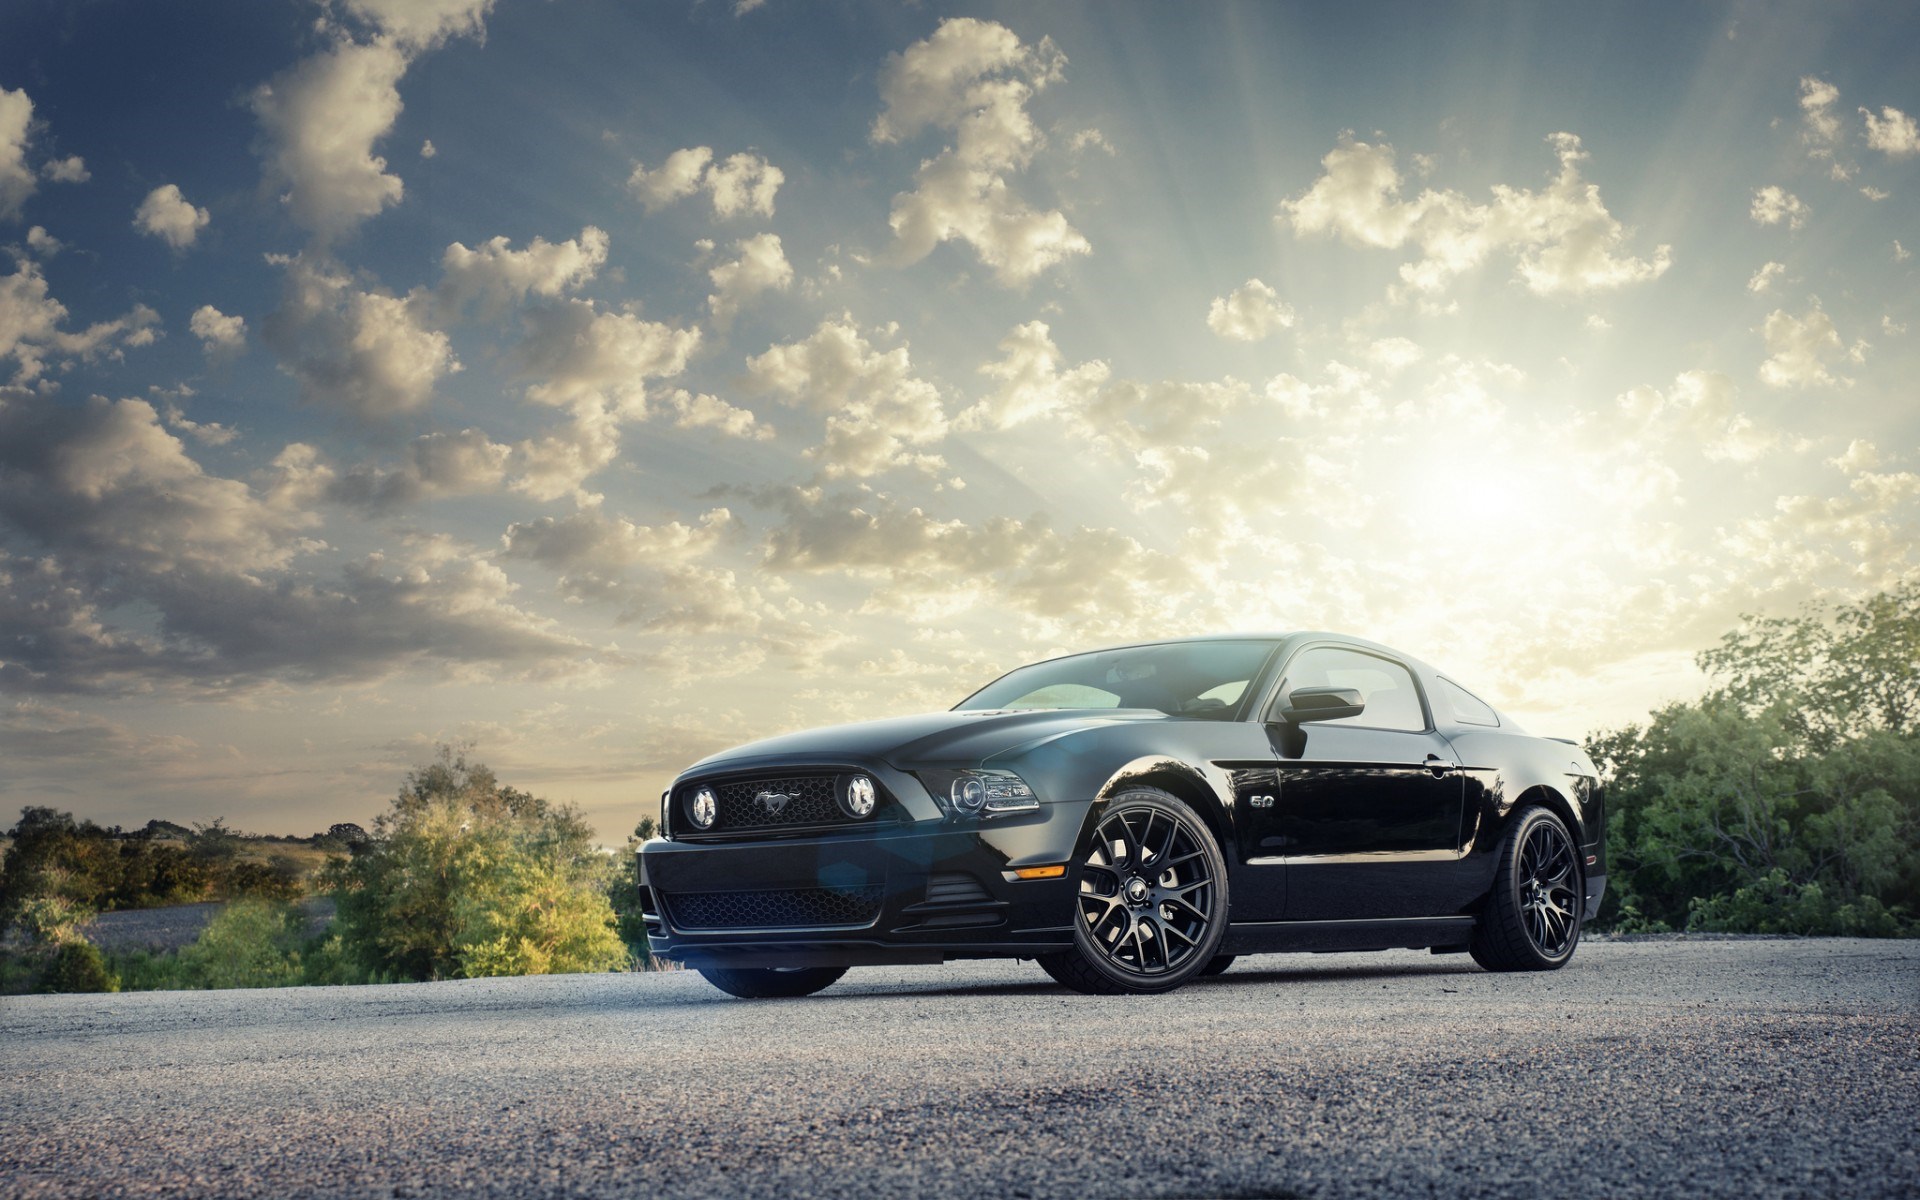 Ford Mustang là một trong những dòng xe huyền thoại của Mỹ, với thiết kế cực kỳ đẹp mắt và sức mạnh vượt trội. Hình ảnh của Ford Mustang sẽ khiến bạn điêu đứng vì vẻ đẹp đầy mê hoặc và sự hoàn hảo từng chi tiết trên chiếc xe. Hãy chiêm ngưỡng những bức ảnh tuyệt đẹp của dòng xe huyền thoại này.